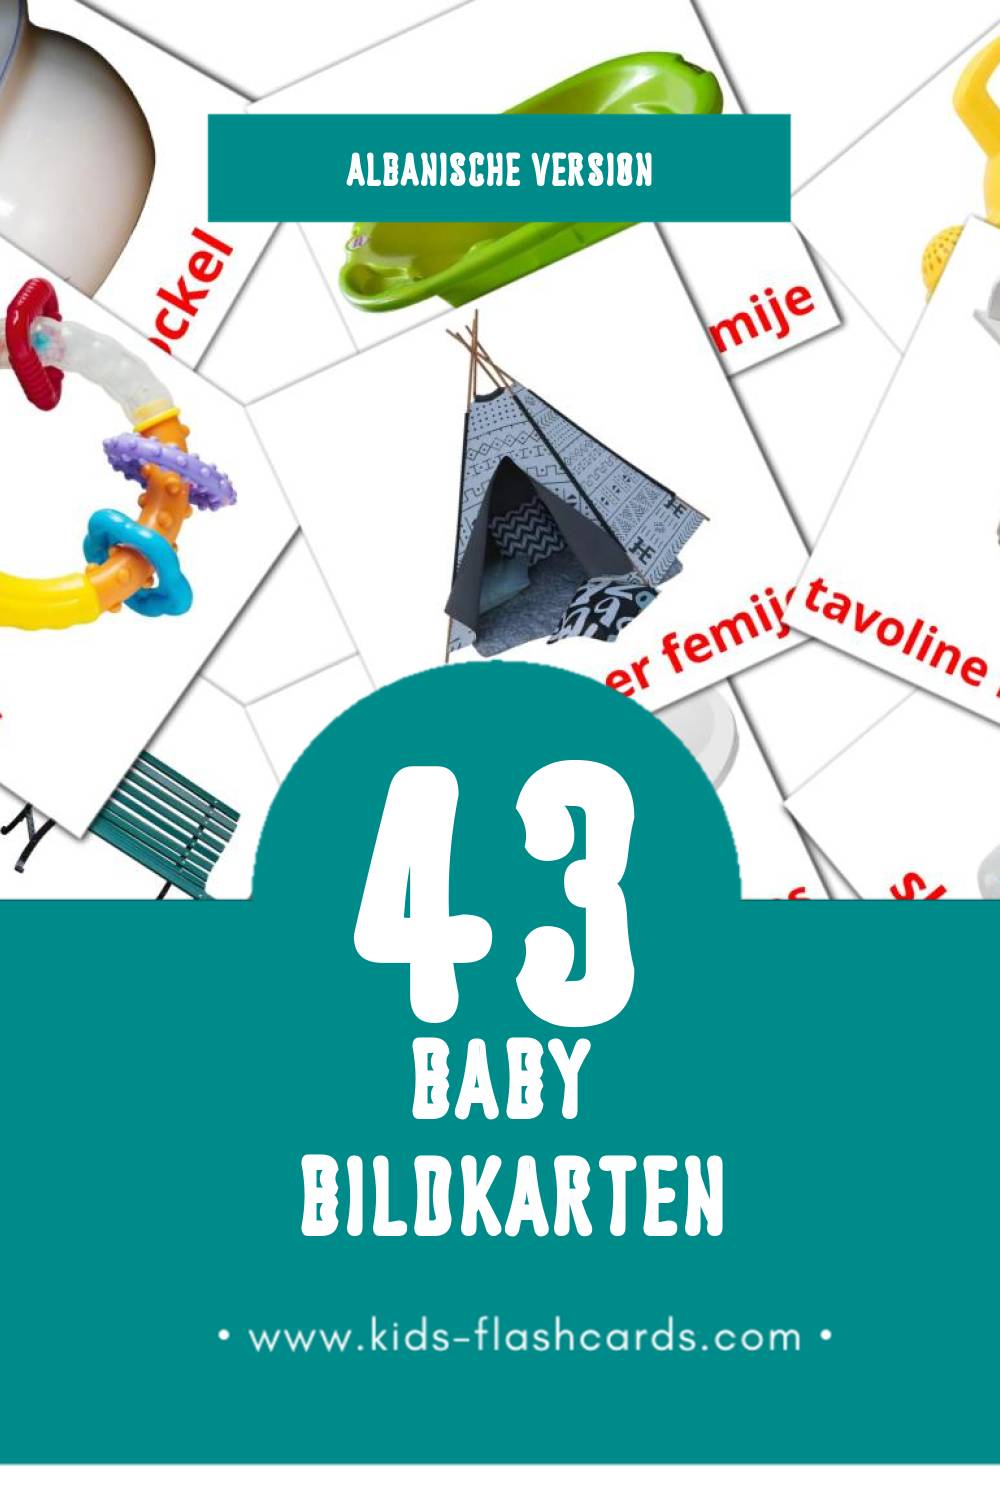 Visual Rroba Flashcards für Kleinkinder (43 Karten in Albanisch)